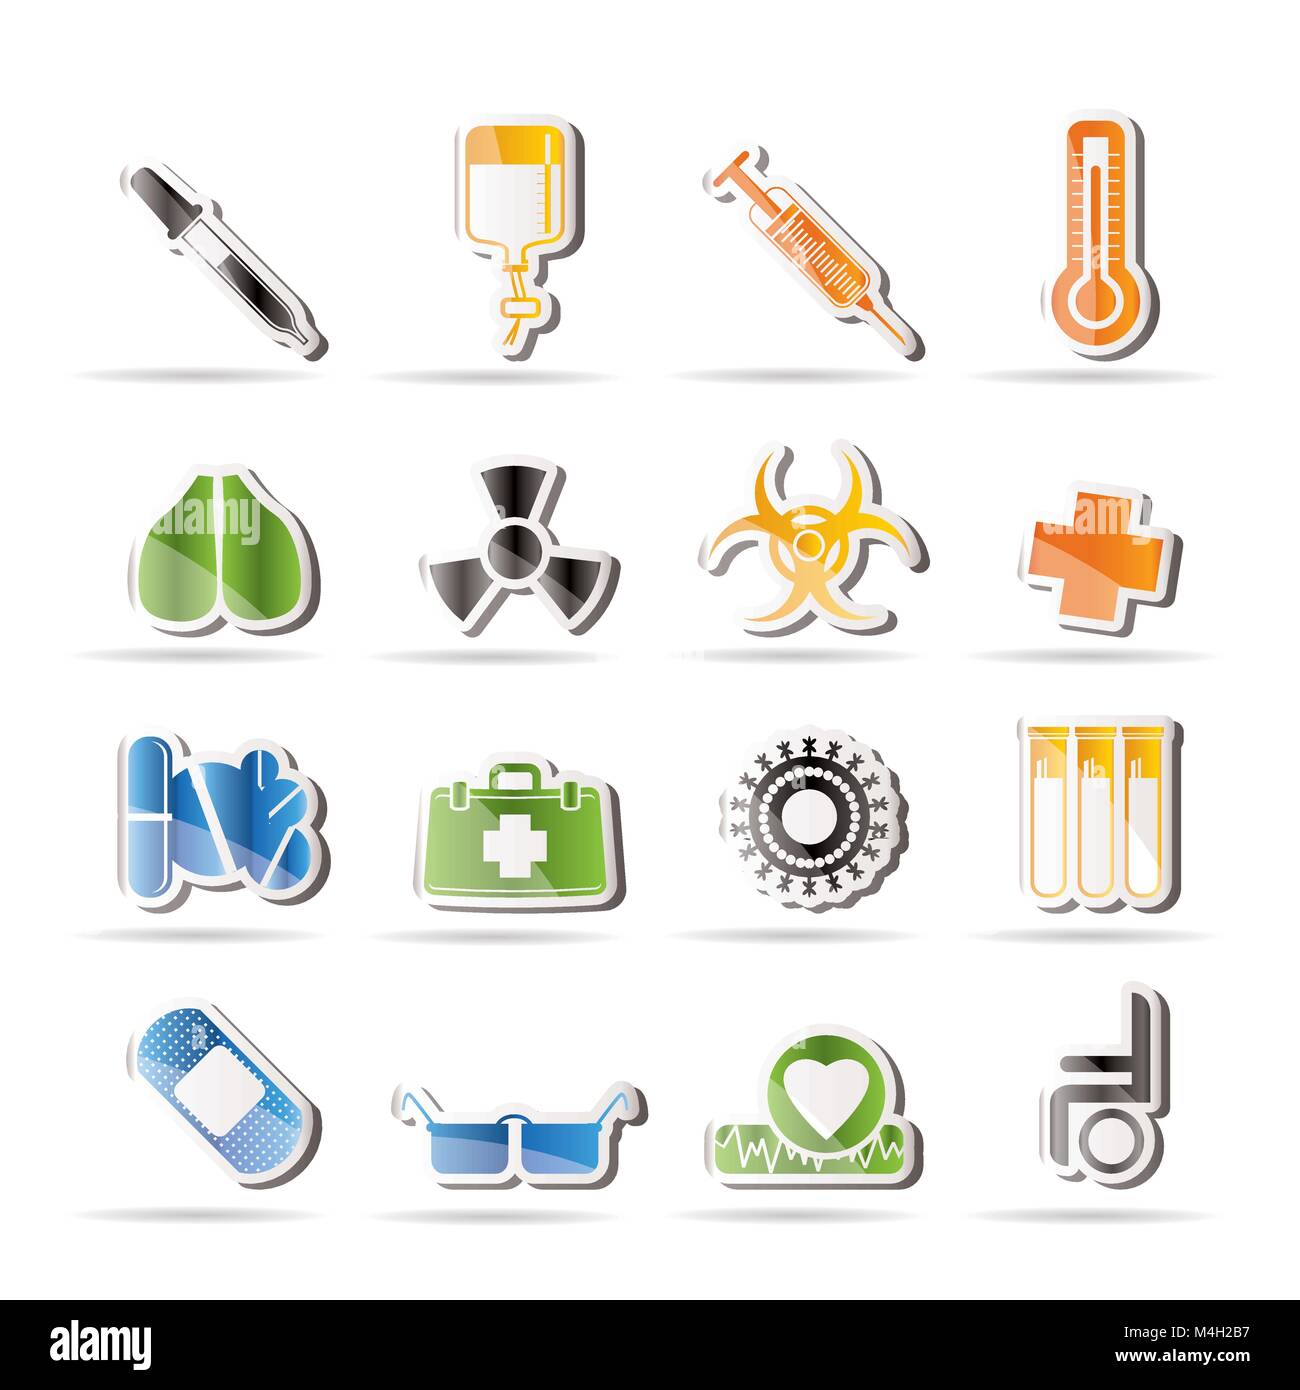 Sammlung von medizinischen themed Symbole und Warnung - Zeichen - Vektor Icon Set Stock Vektor